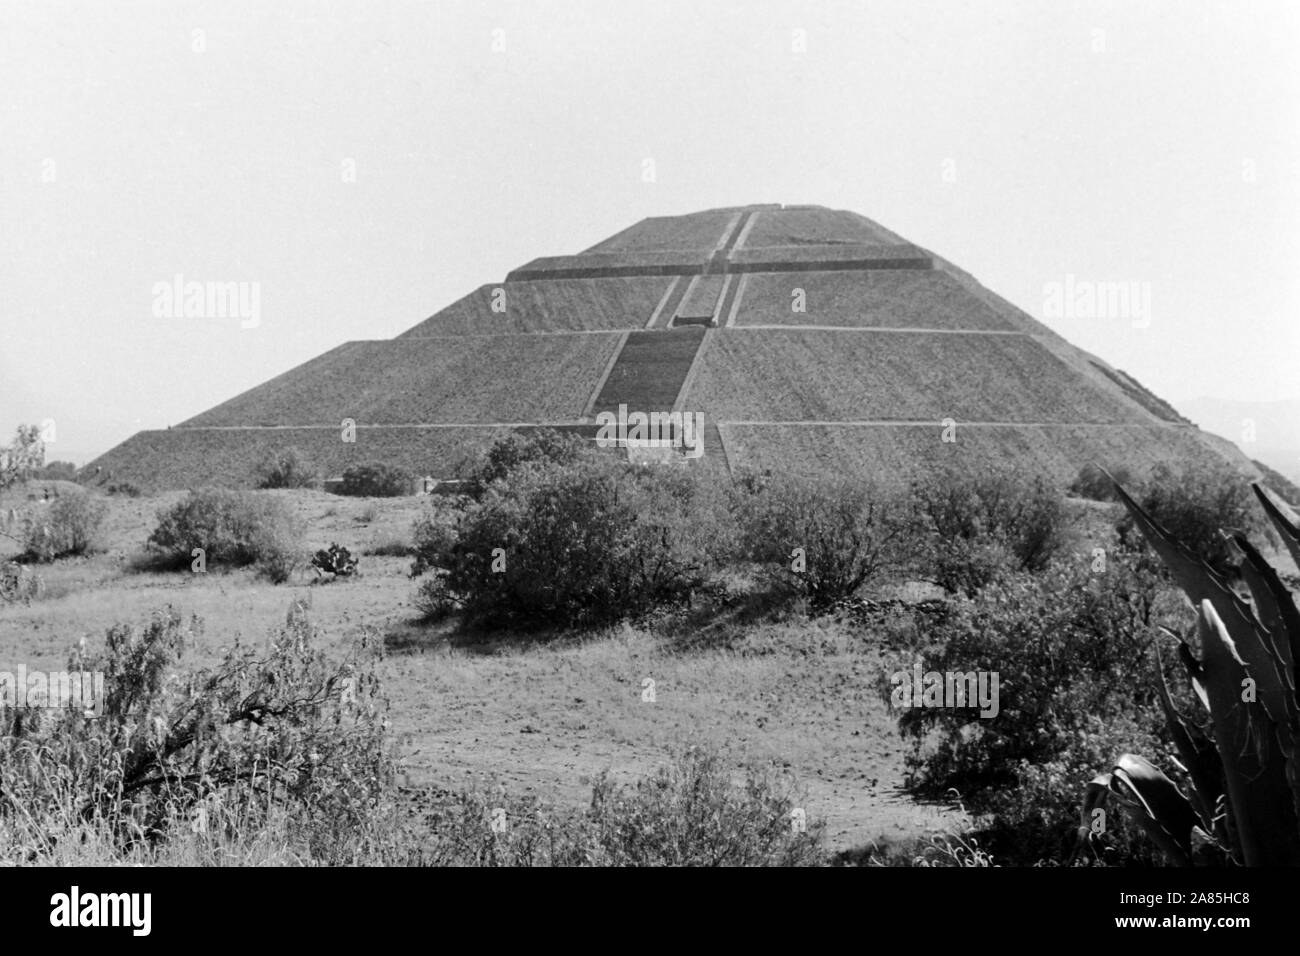 Prähistorische Stadt Teotihuacán, Weltkulturerbe der UNESCO, 1960er. Prehistorical city of Teotihuacán, UNESCO World Heritage Site, 1960s. Stock Photo